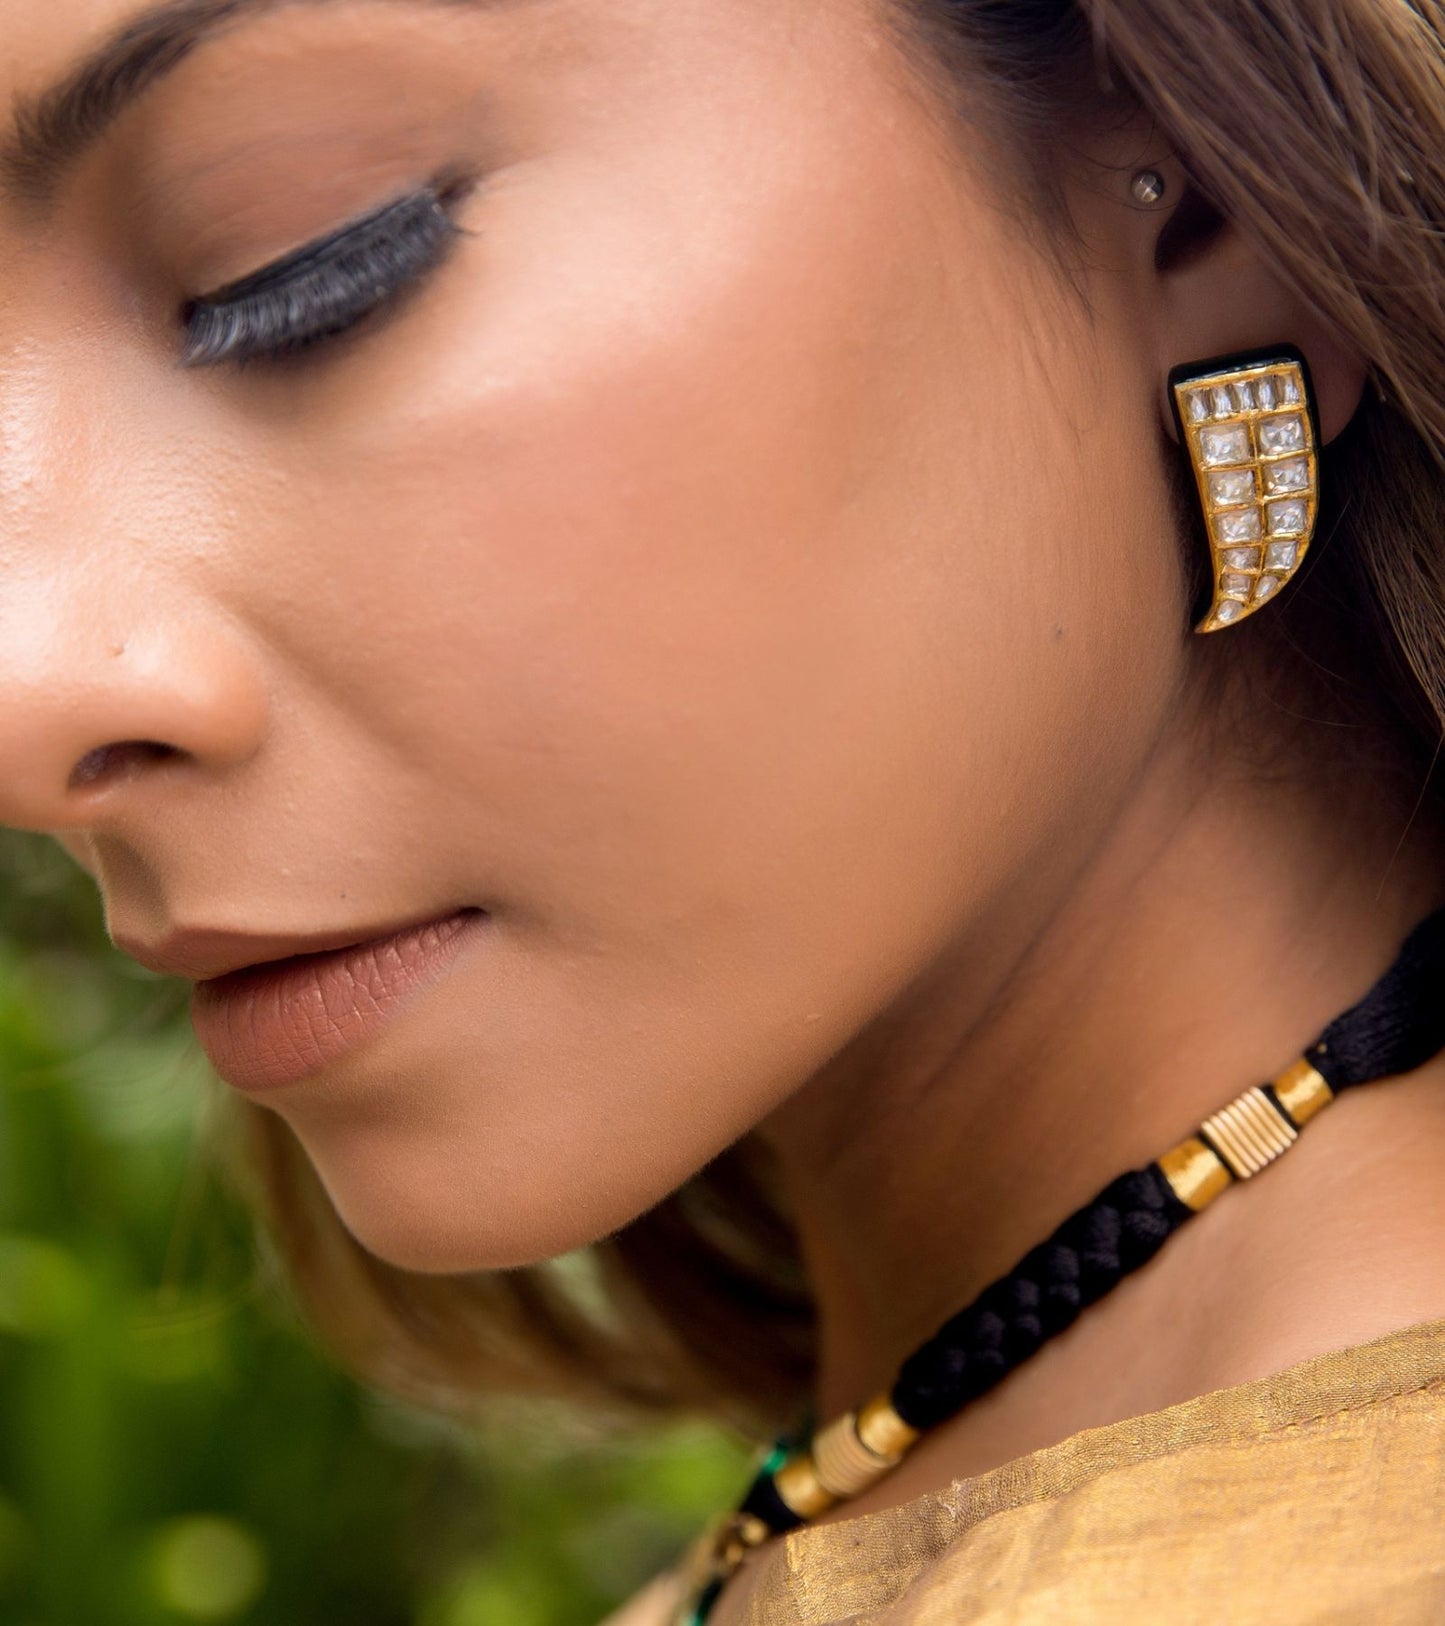 Vagh Nakh Earrings | Festive